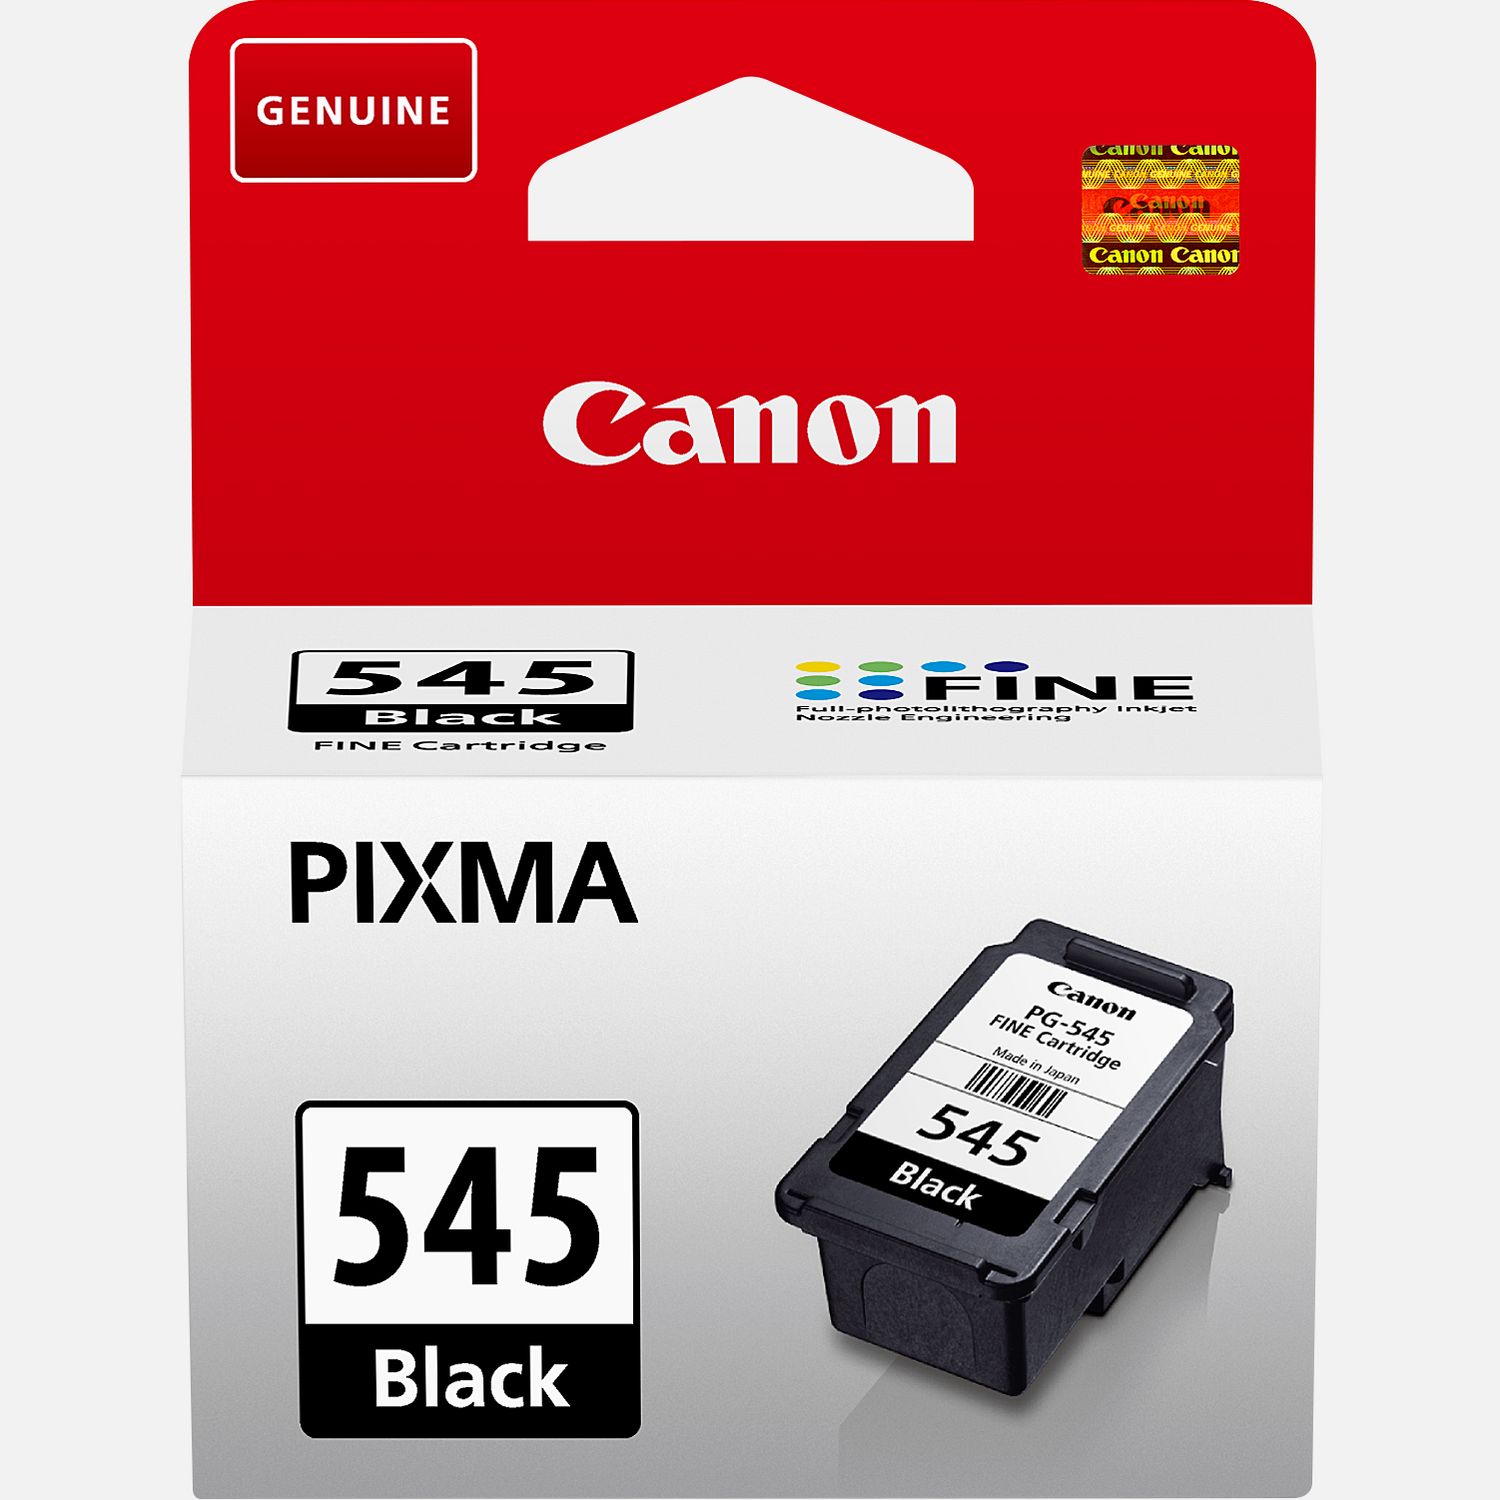 Canon 545 546 - Noir, couleurs - Compatible ♻️